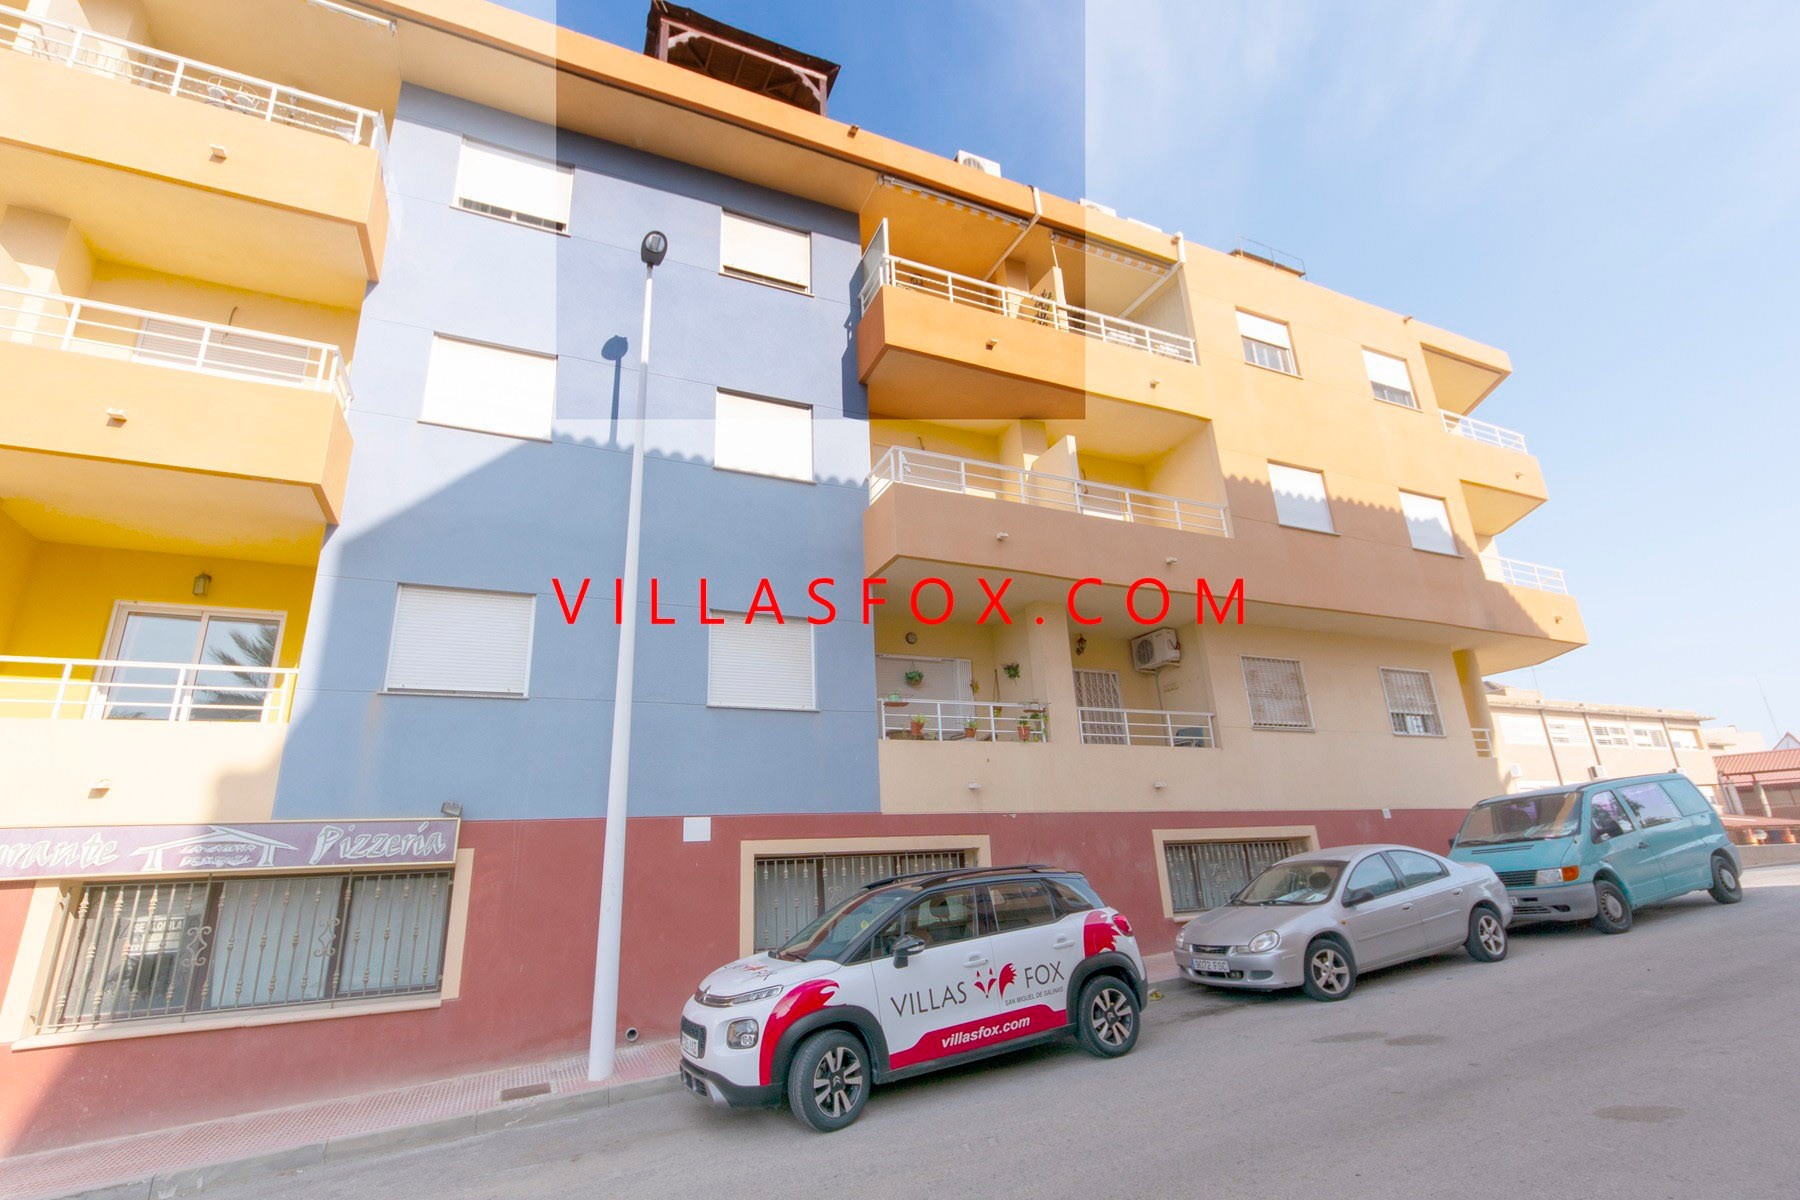 1 דירה בסן מיגל דה סלינס במרכז העיר על ידי Villas Fox סוכני הנדל"ן הטובים ביותר 611039449965e